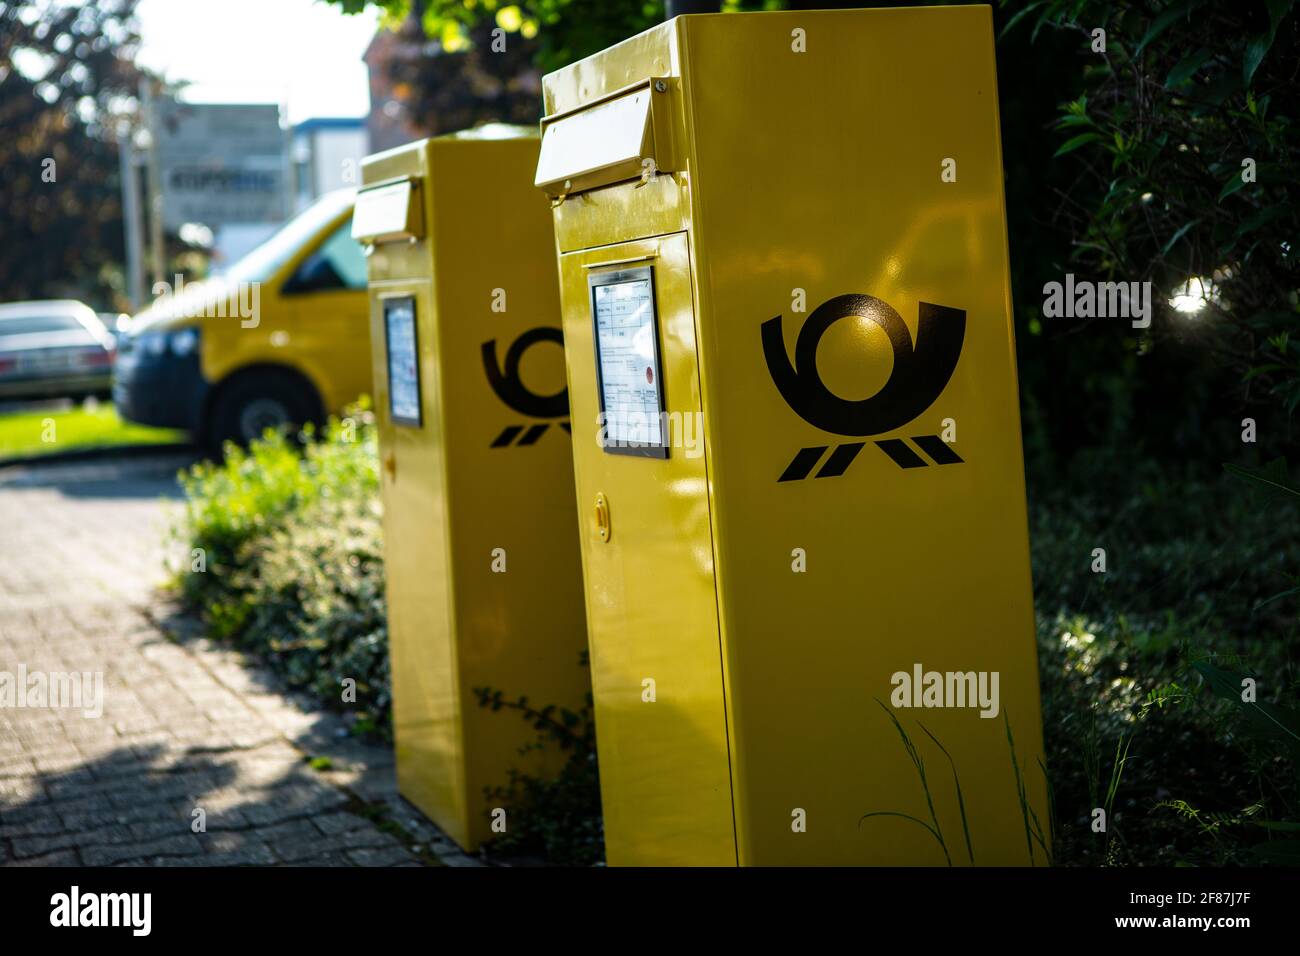 Briefkasten der deutschen Post in knalligem Postgelb Stock Photo